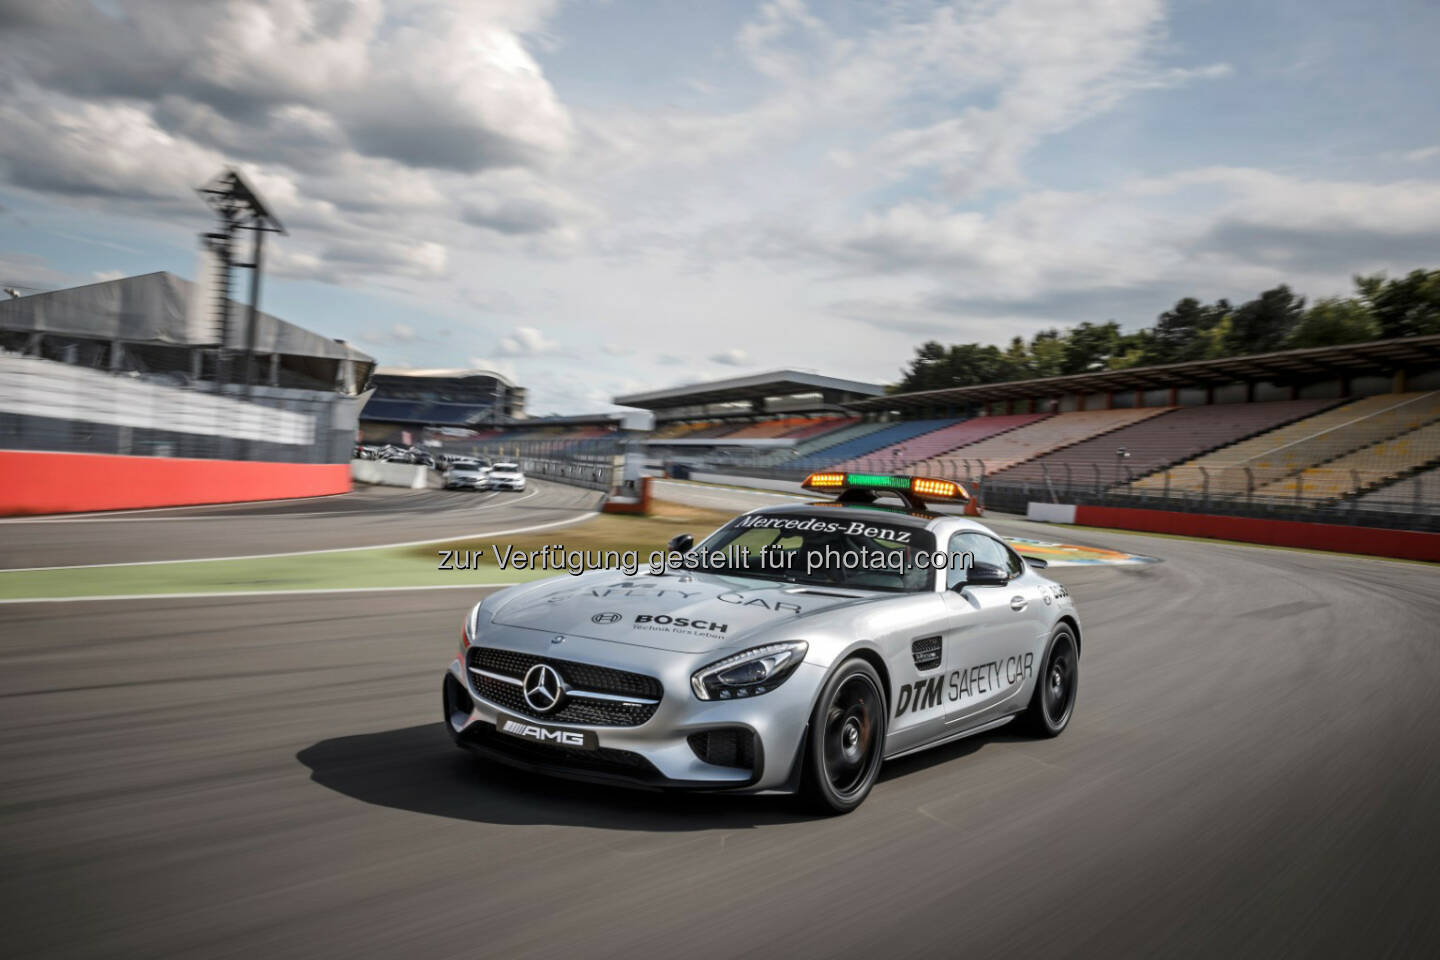 Mercedes-AMG GT S als offizielles Saftey Car der DTM 2015: DTM-Premiere für ein neues Safety Car: Beim zweiten DTM-Lauf am Lausitzring (29. bis 31. Mai 2015) wird erstmals der Mercedes-AMG GT S zum Einsatz kommen.

